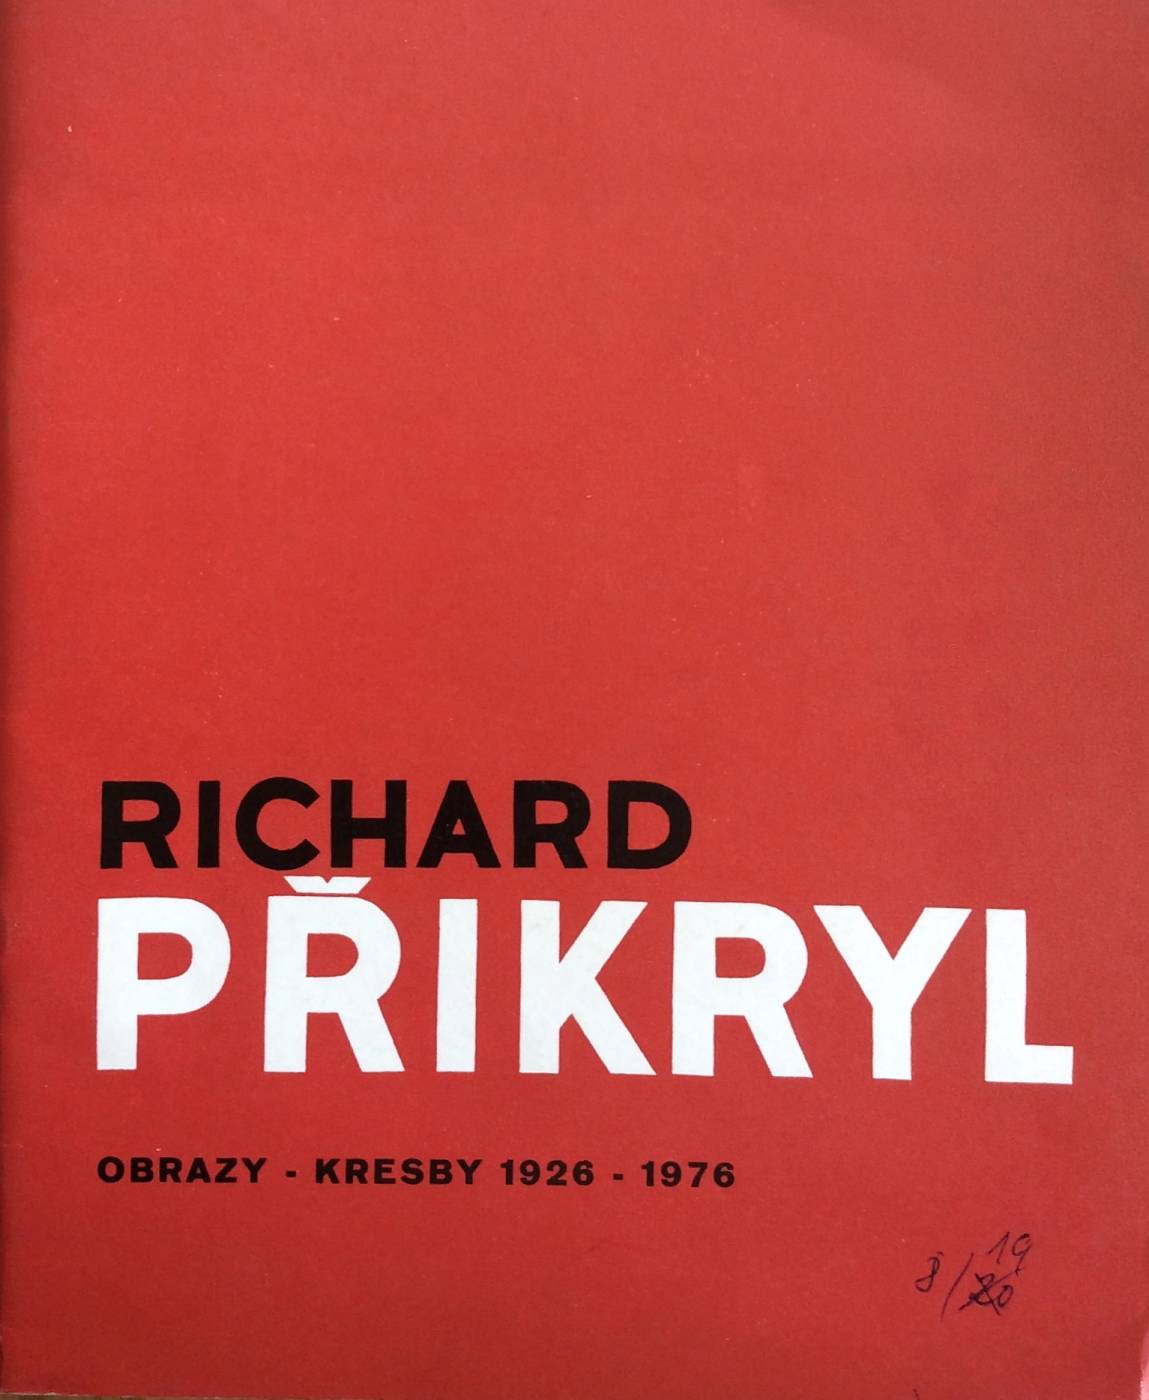 Richard Přikryl – obrazy, kresby 1926 – 1976